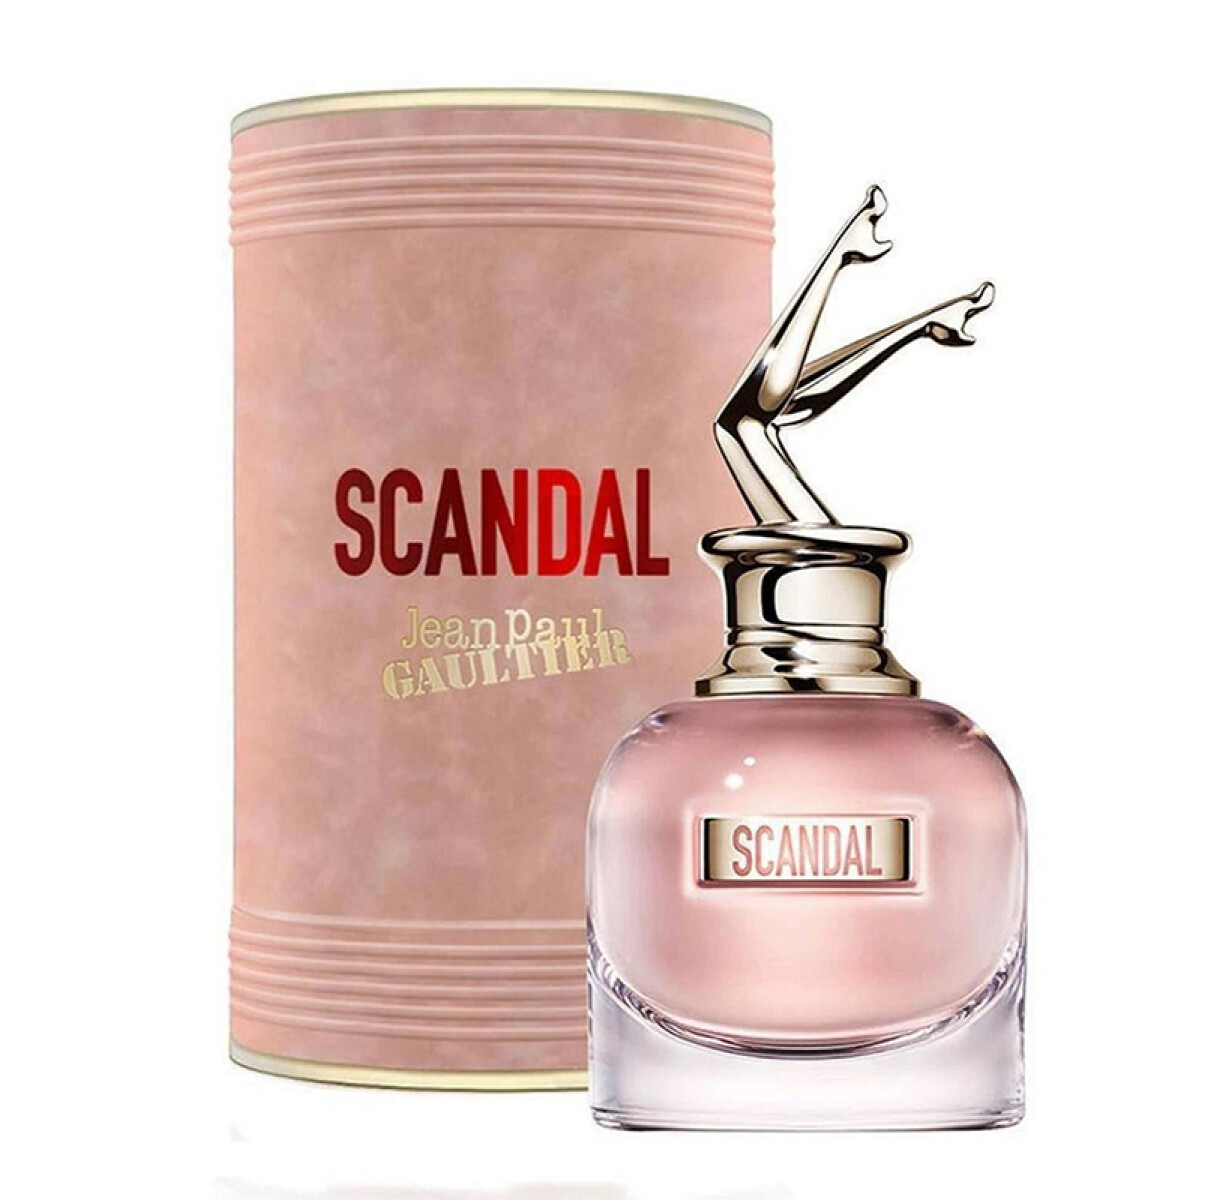 Jean Paul Gaultier Scandal eau de parfum - 30 ml 